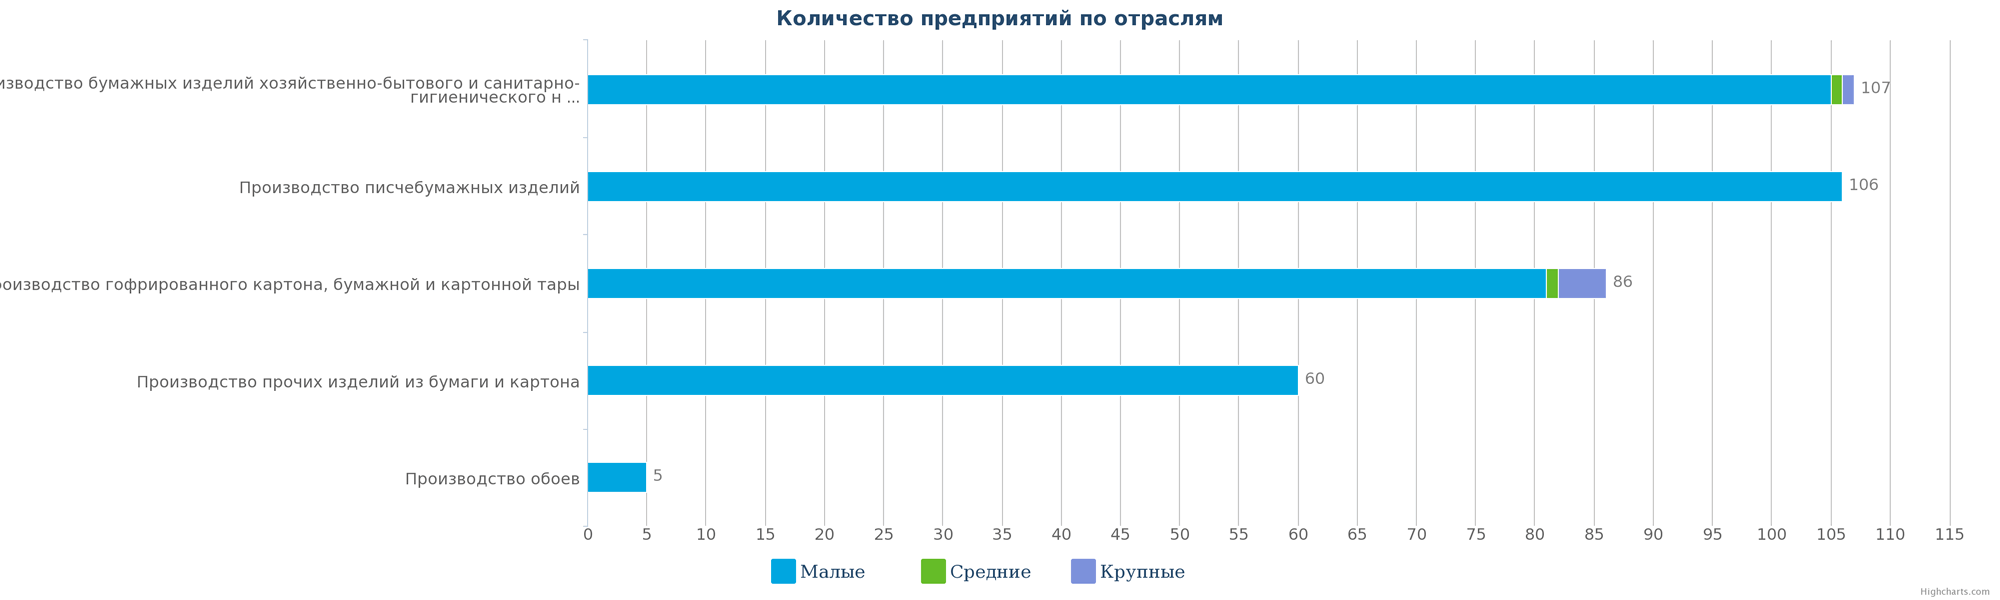  Количество компаний, занимающиеся производством изделий из бумаги и картона в Казахстане по видам деятельности на 16.01.2017